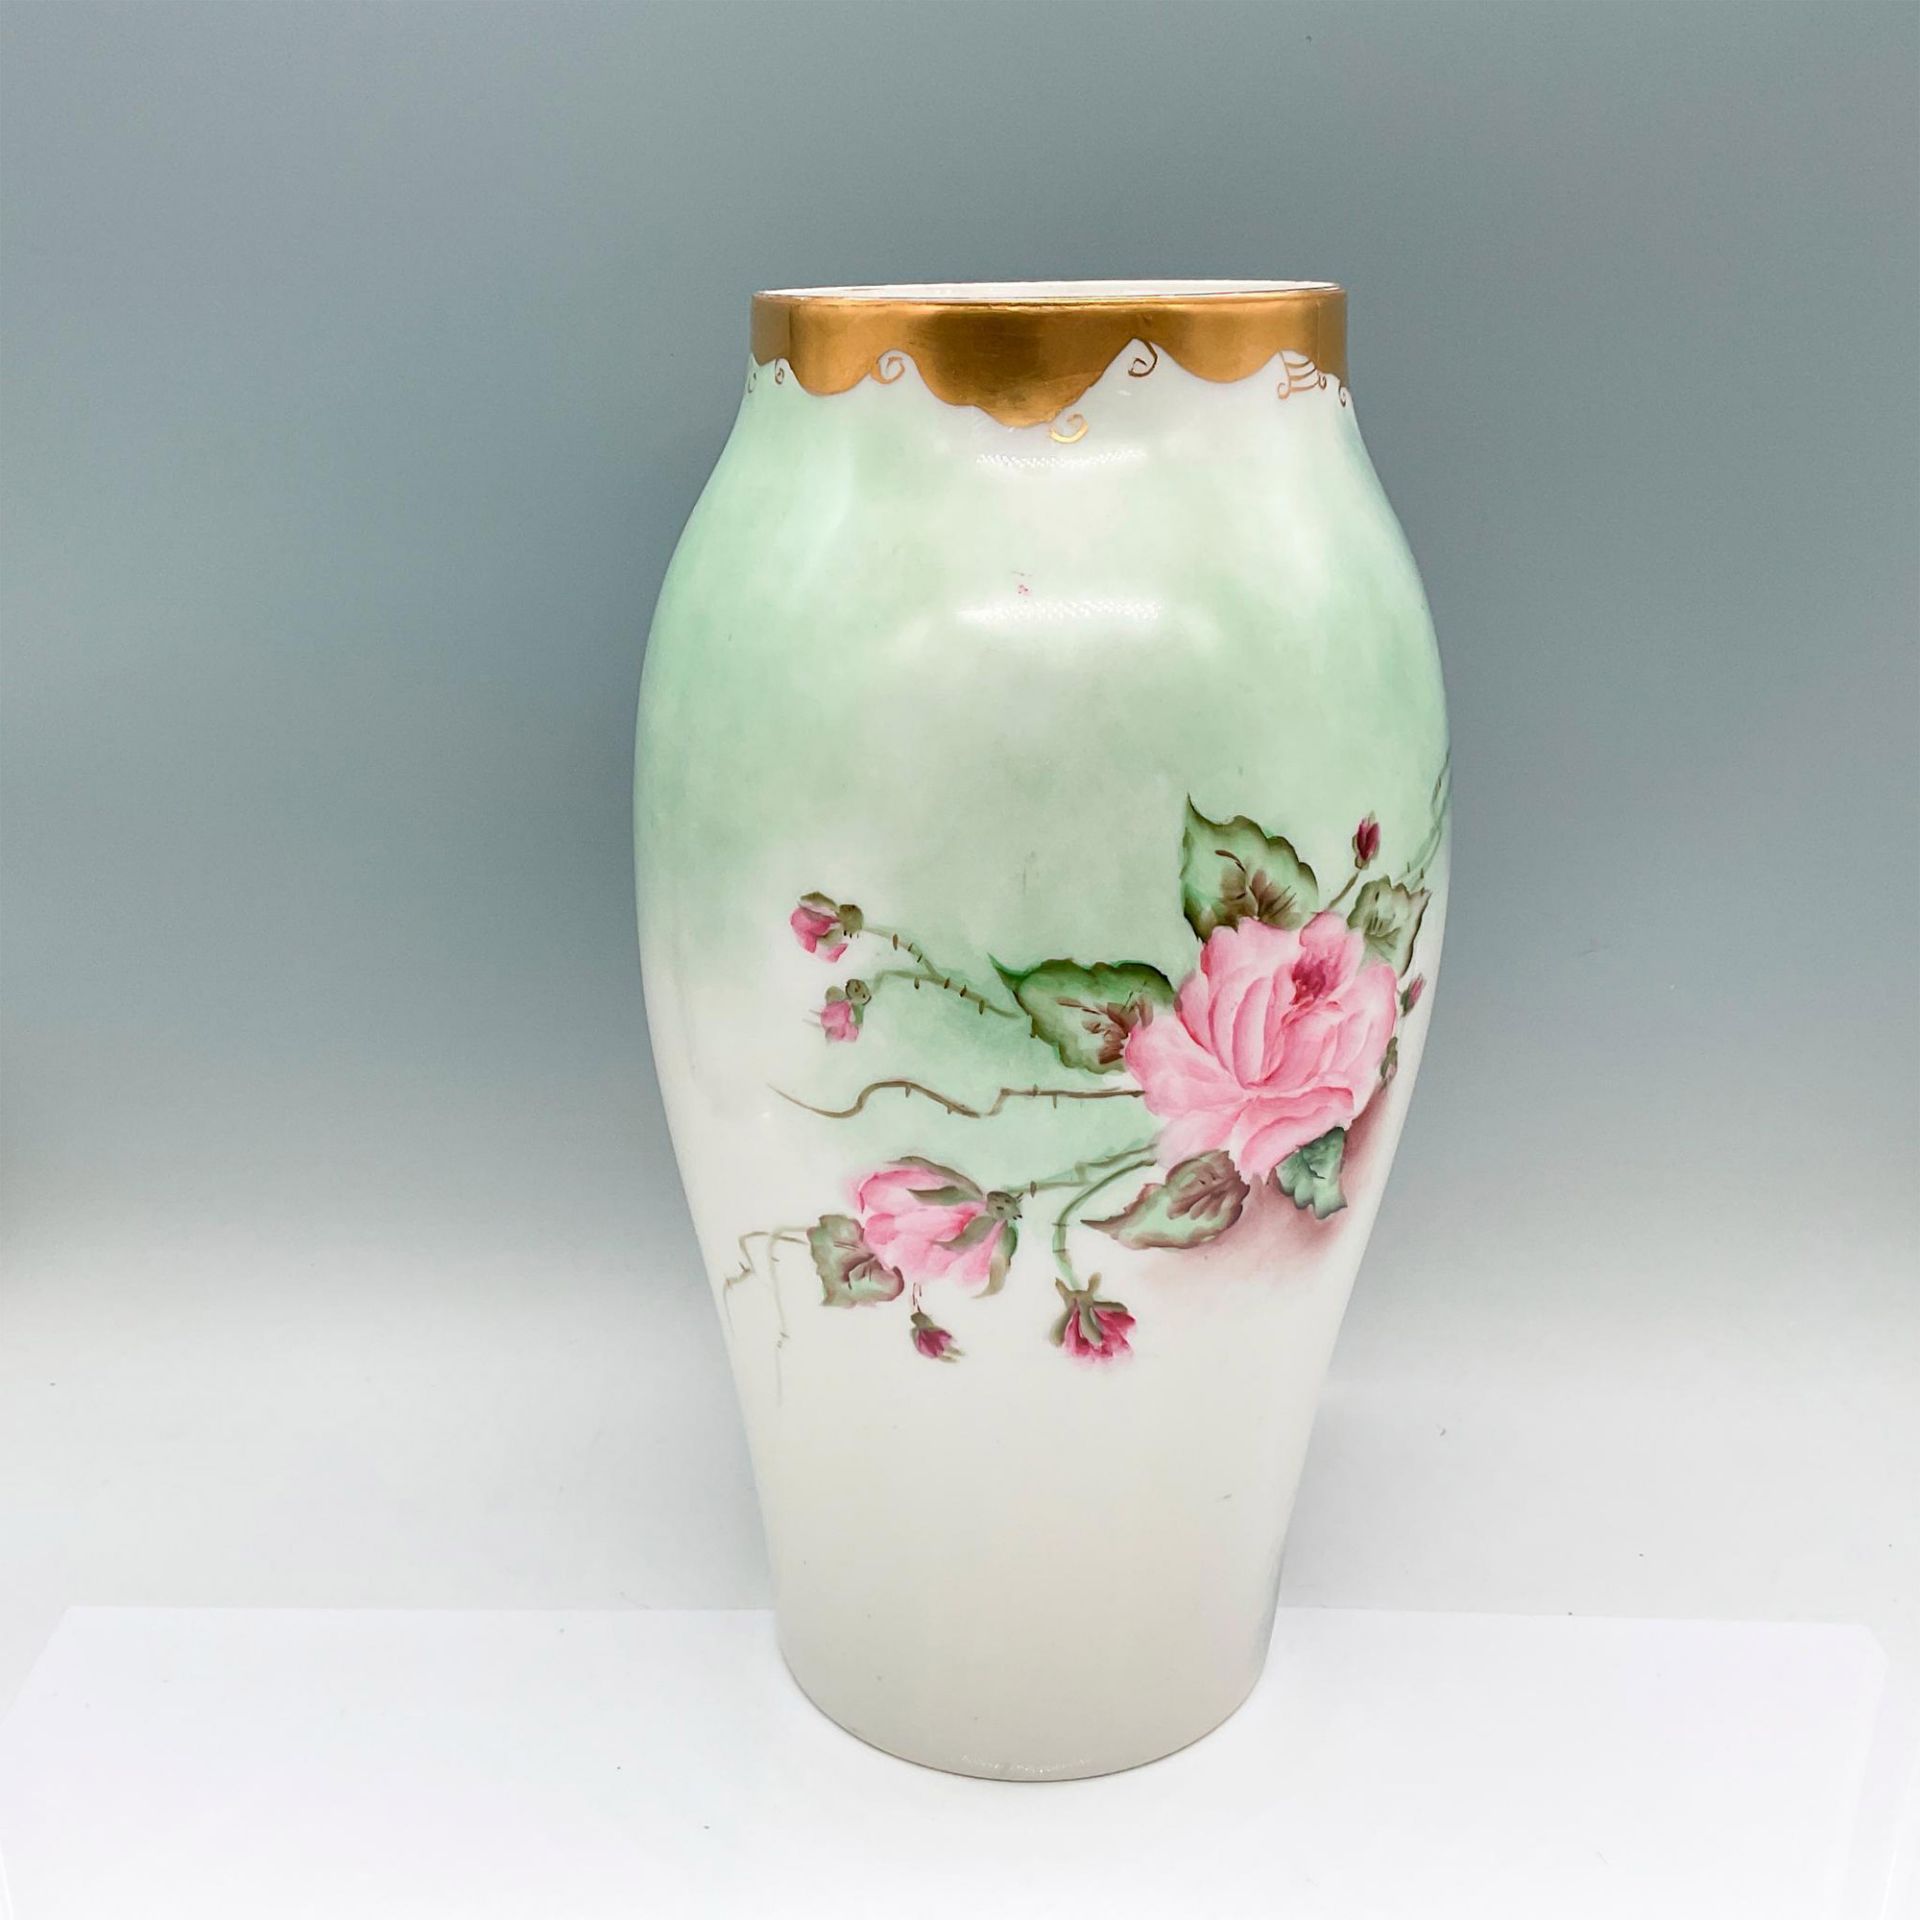 Tressemanes & Vogt Porcelain Limoges Floral Vase - Image 2 of 3